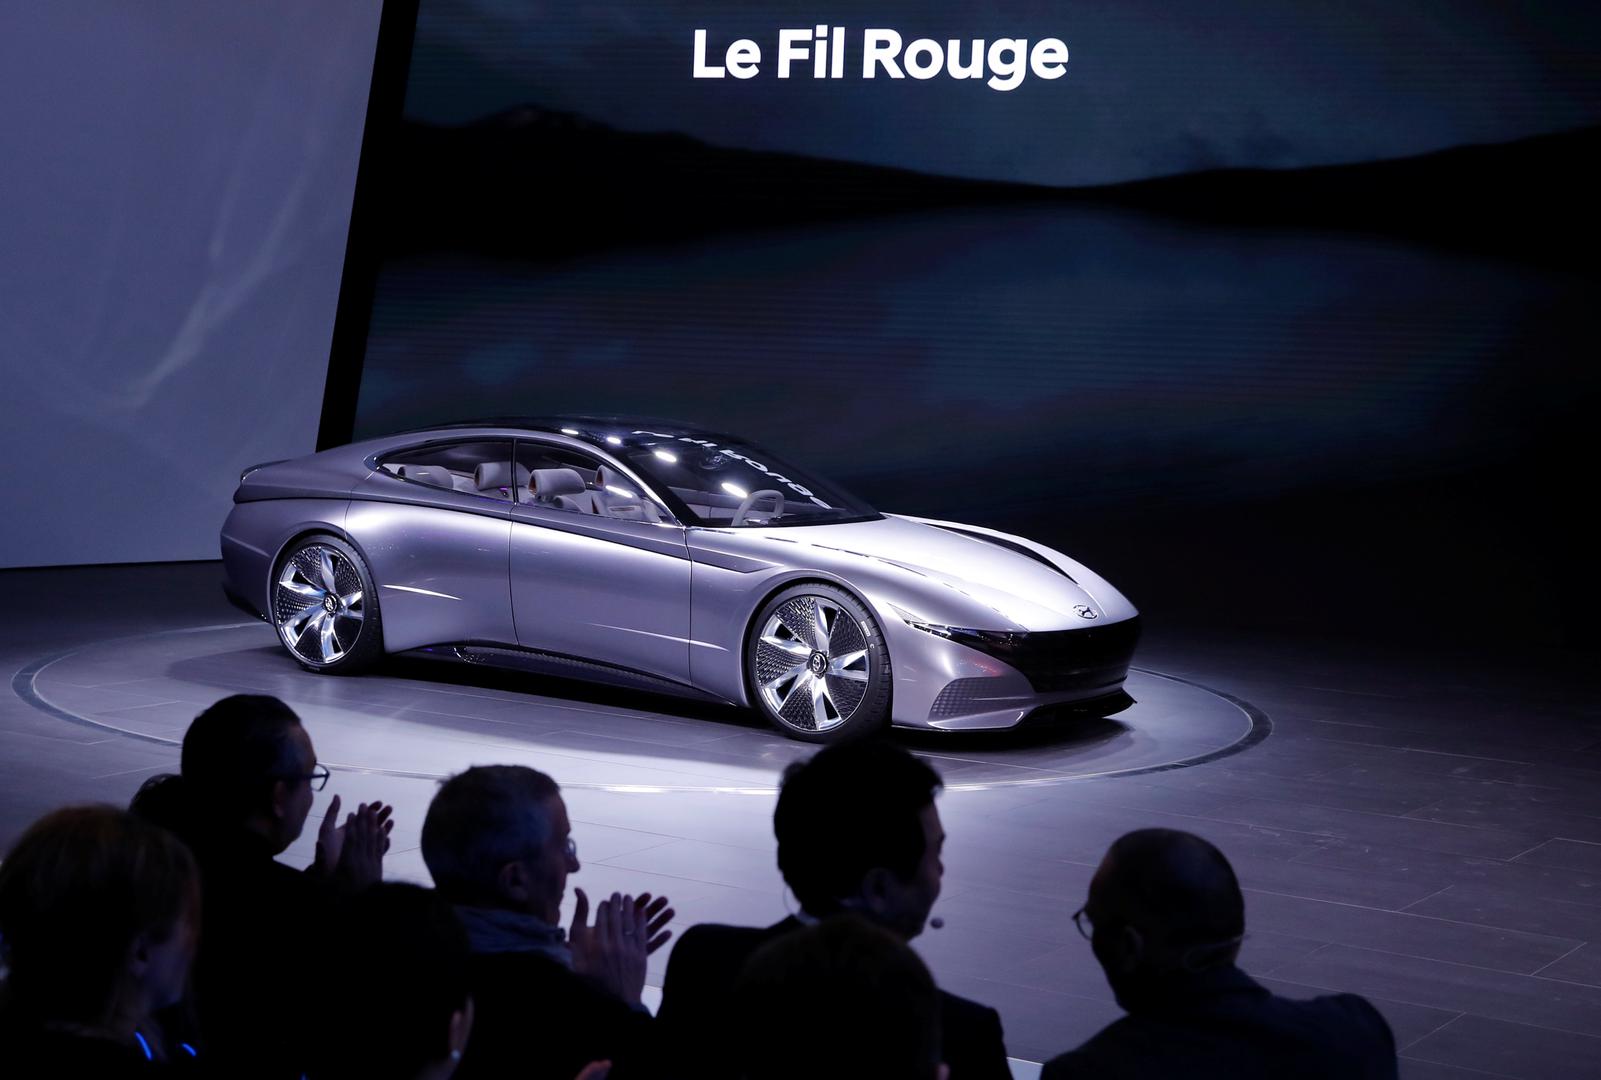 Auto-salon u Ženevi, jedan od najvećih na svijetu, otvorio je svoja vrata novinarima. Na slici je Hyundai Le Fil Rouge.